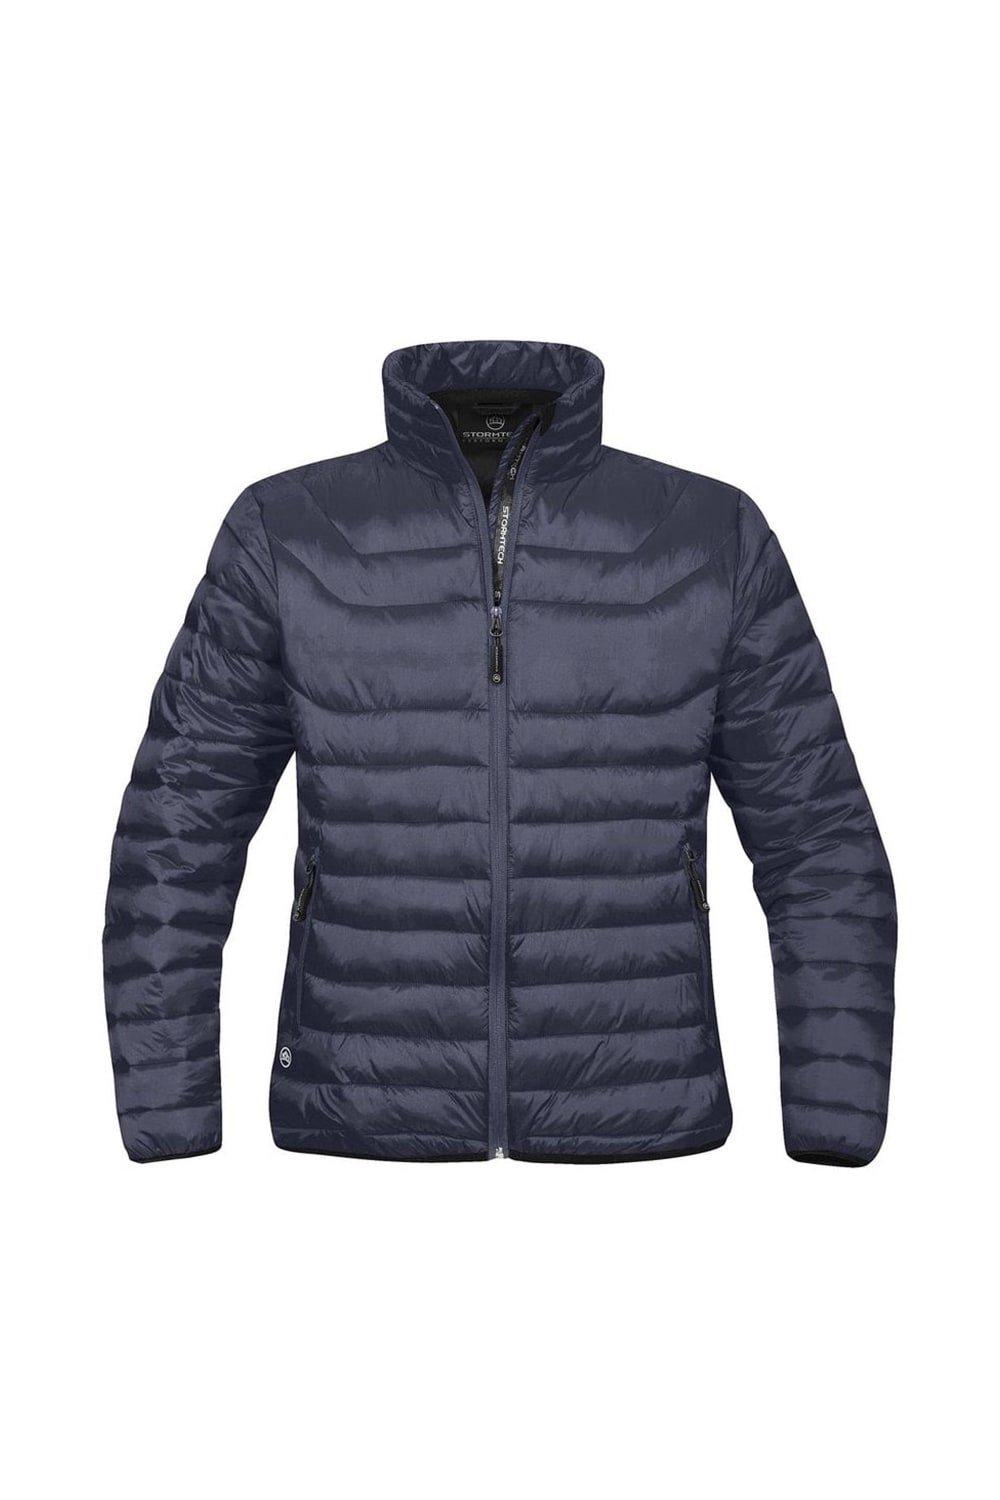 Куртка Altitude (водостойкая и дышащая) Stormtech, темно-синий